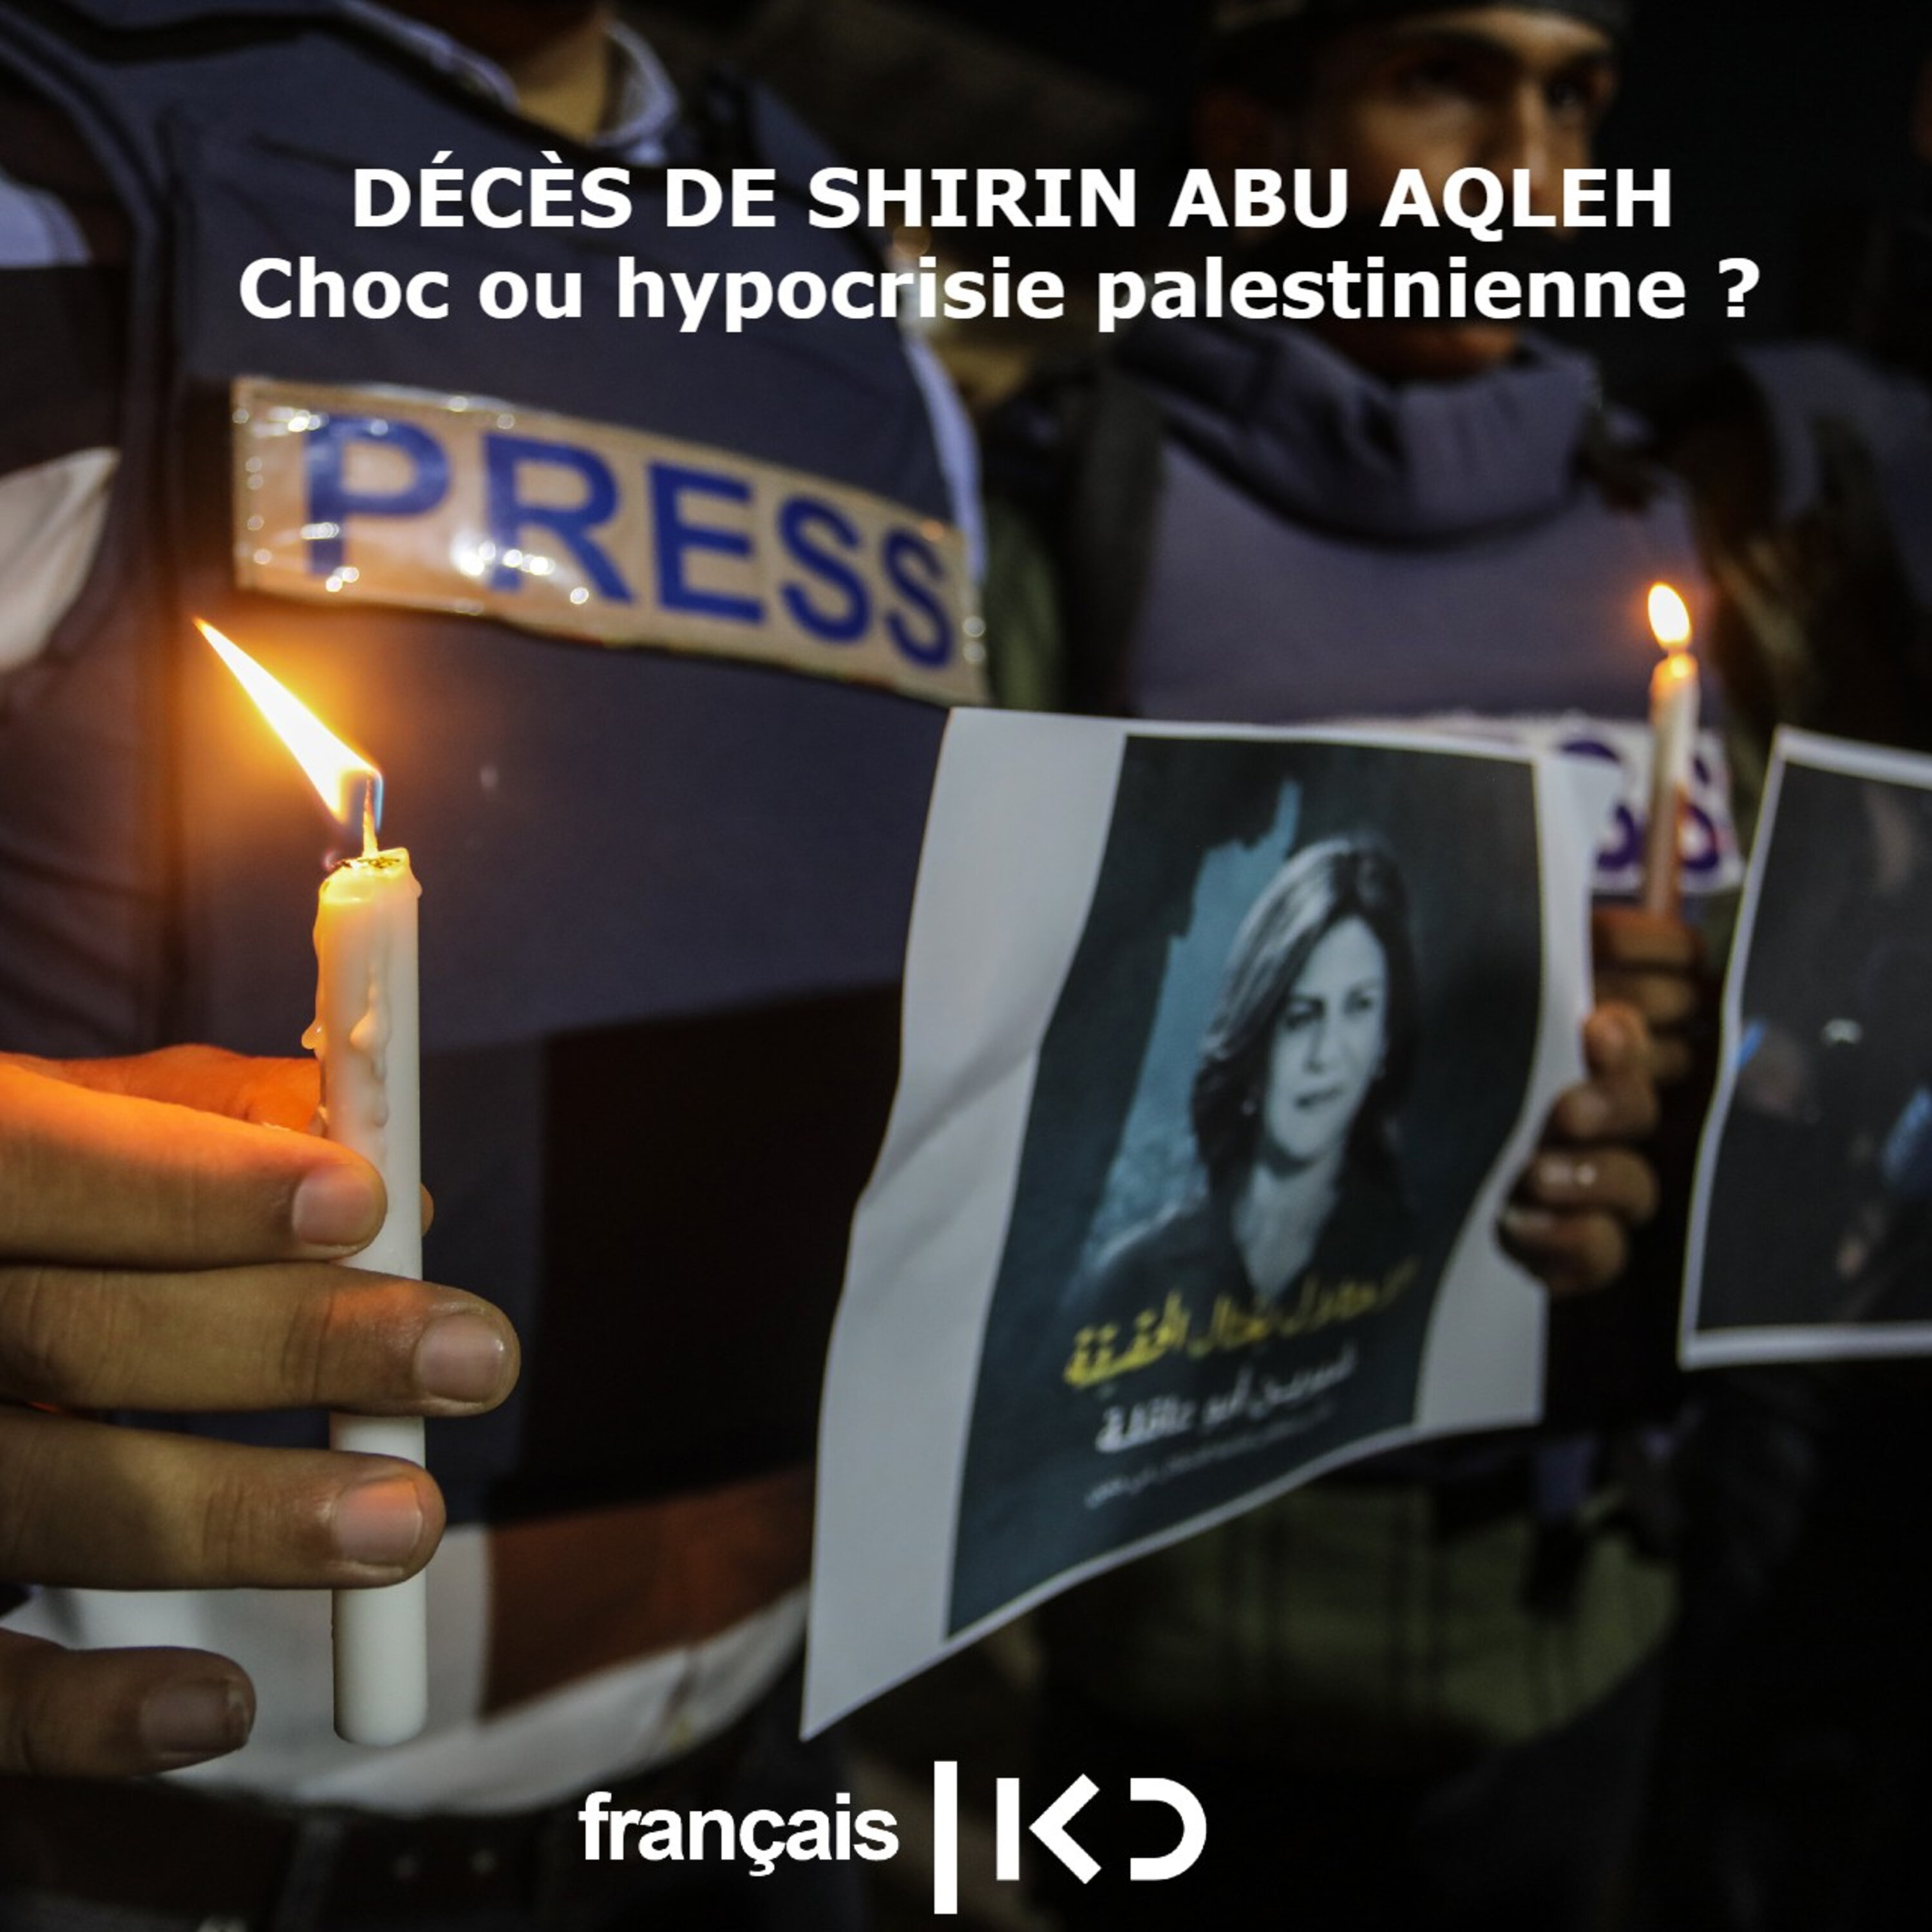 DECES DE SHIRIN ABU AQLEH CHOC OU HYPOCRISIE PALESTINIENNE